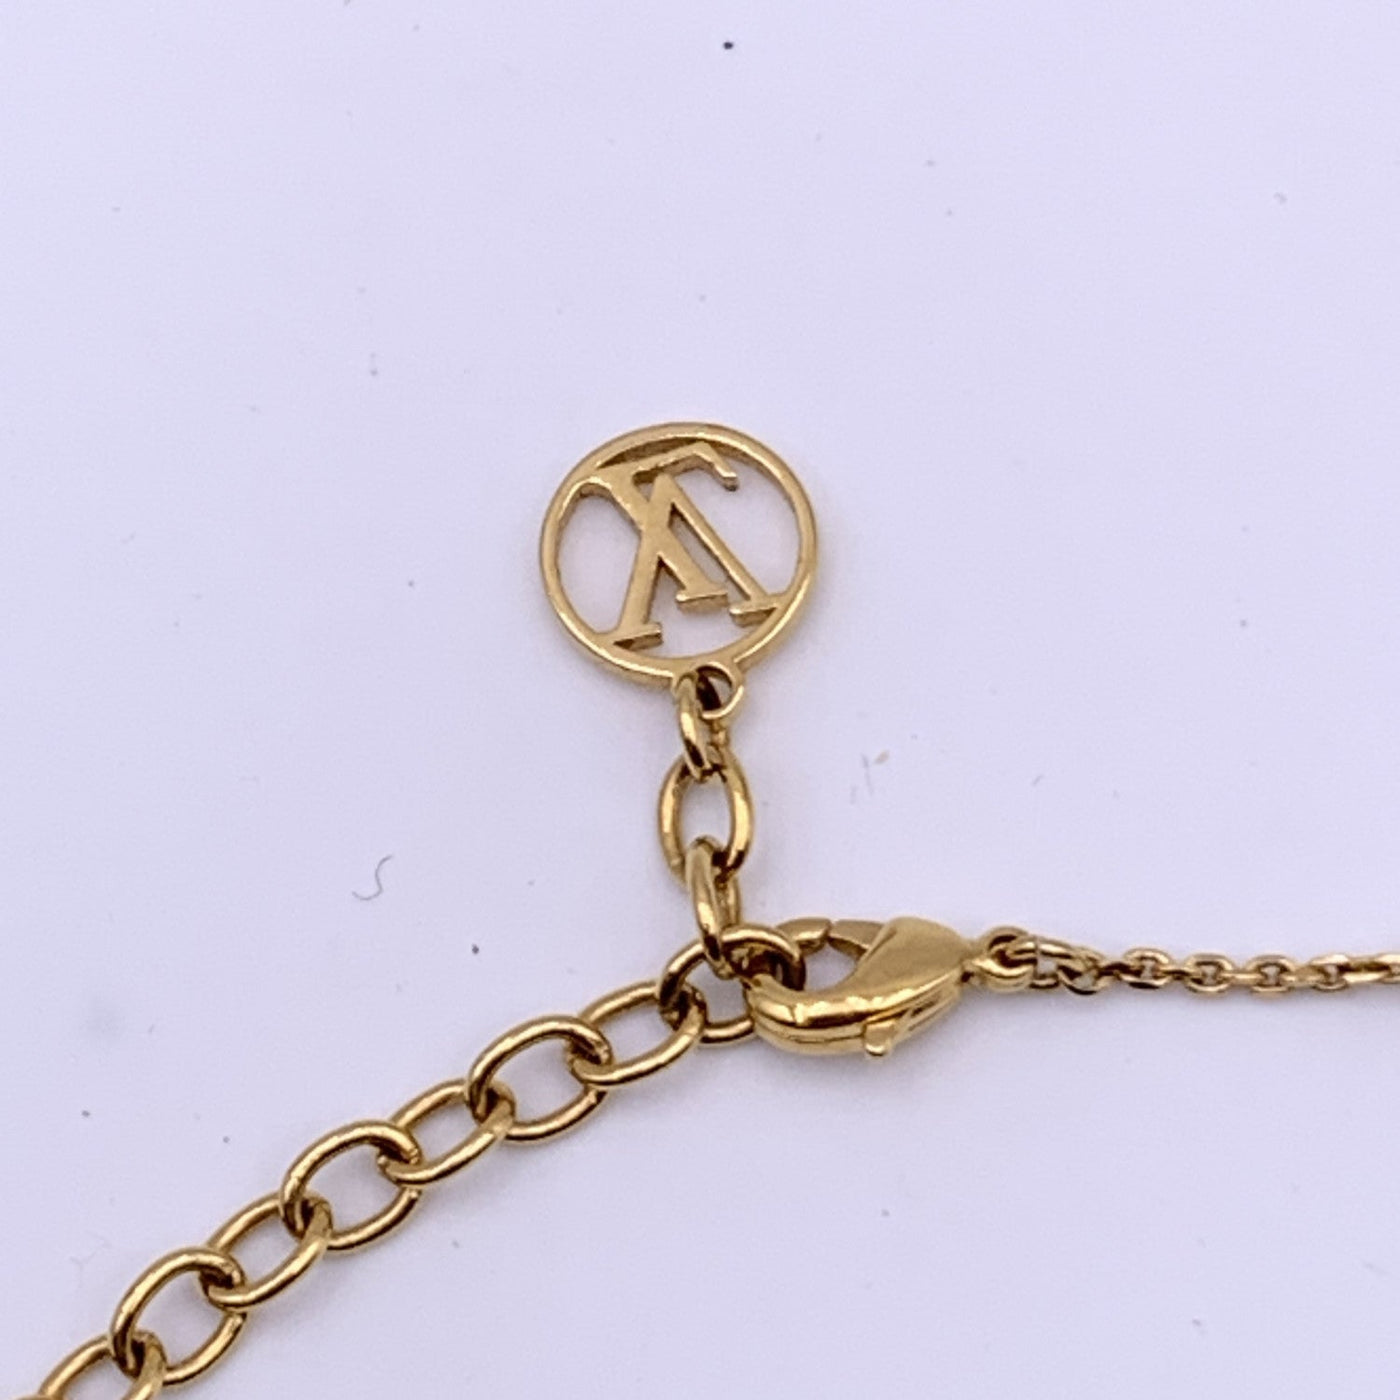 Louis Vuitton LV & Me Bracelet, Letter x Gold Metal